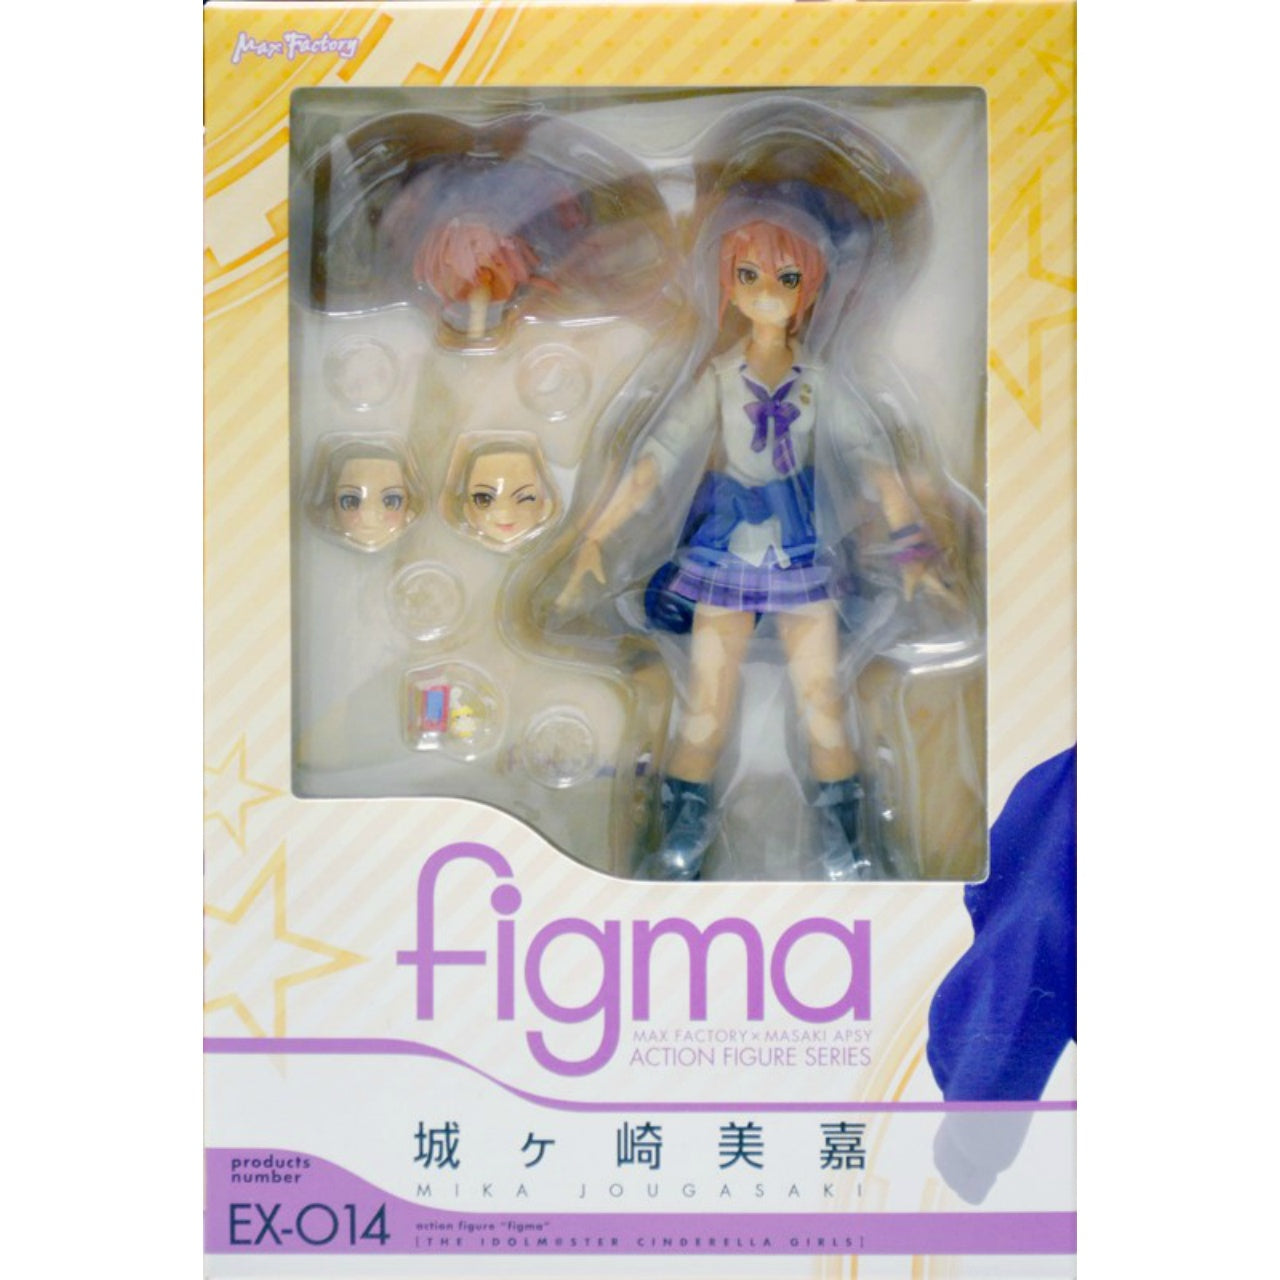 Figma EX 014 Jougasaki Mika, animota